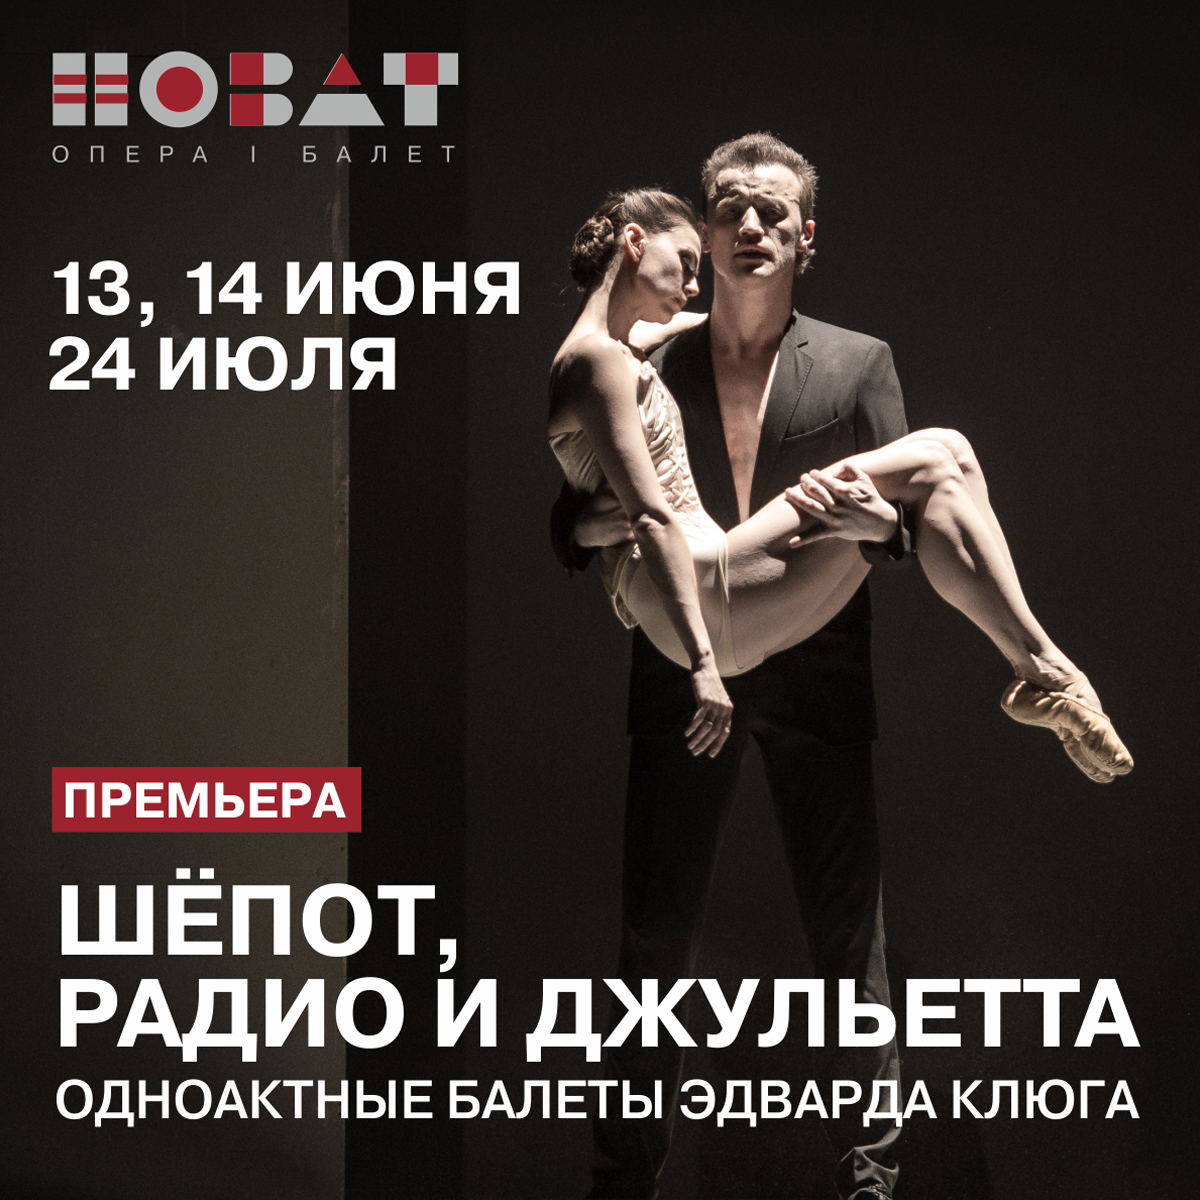 Премьера одноактных балетов Эдварда Клюга в НОВАТе